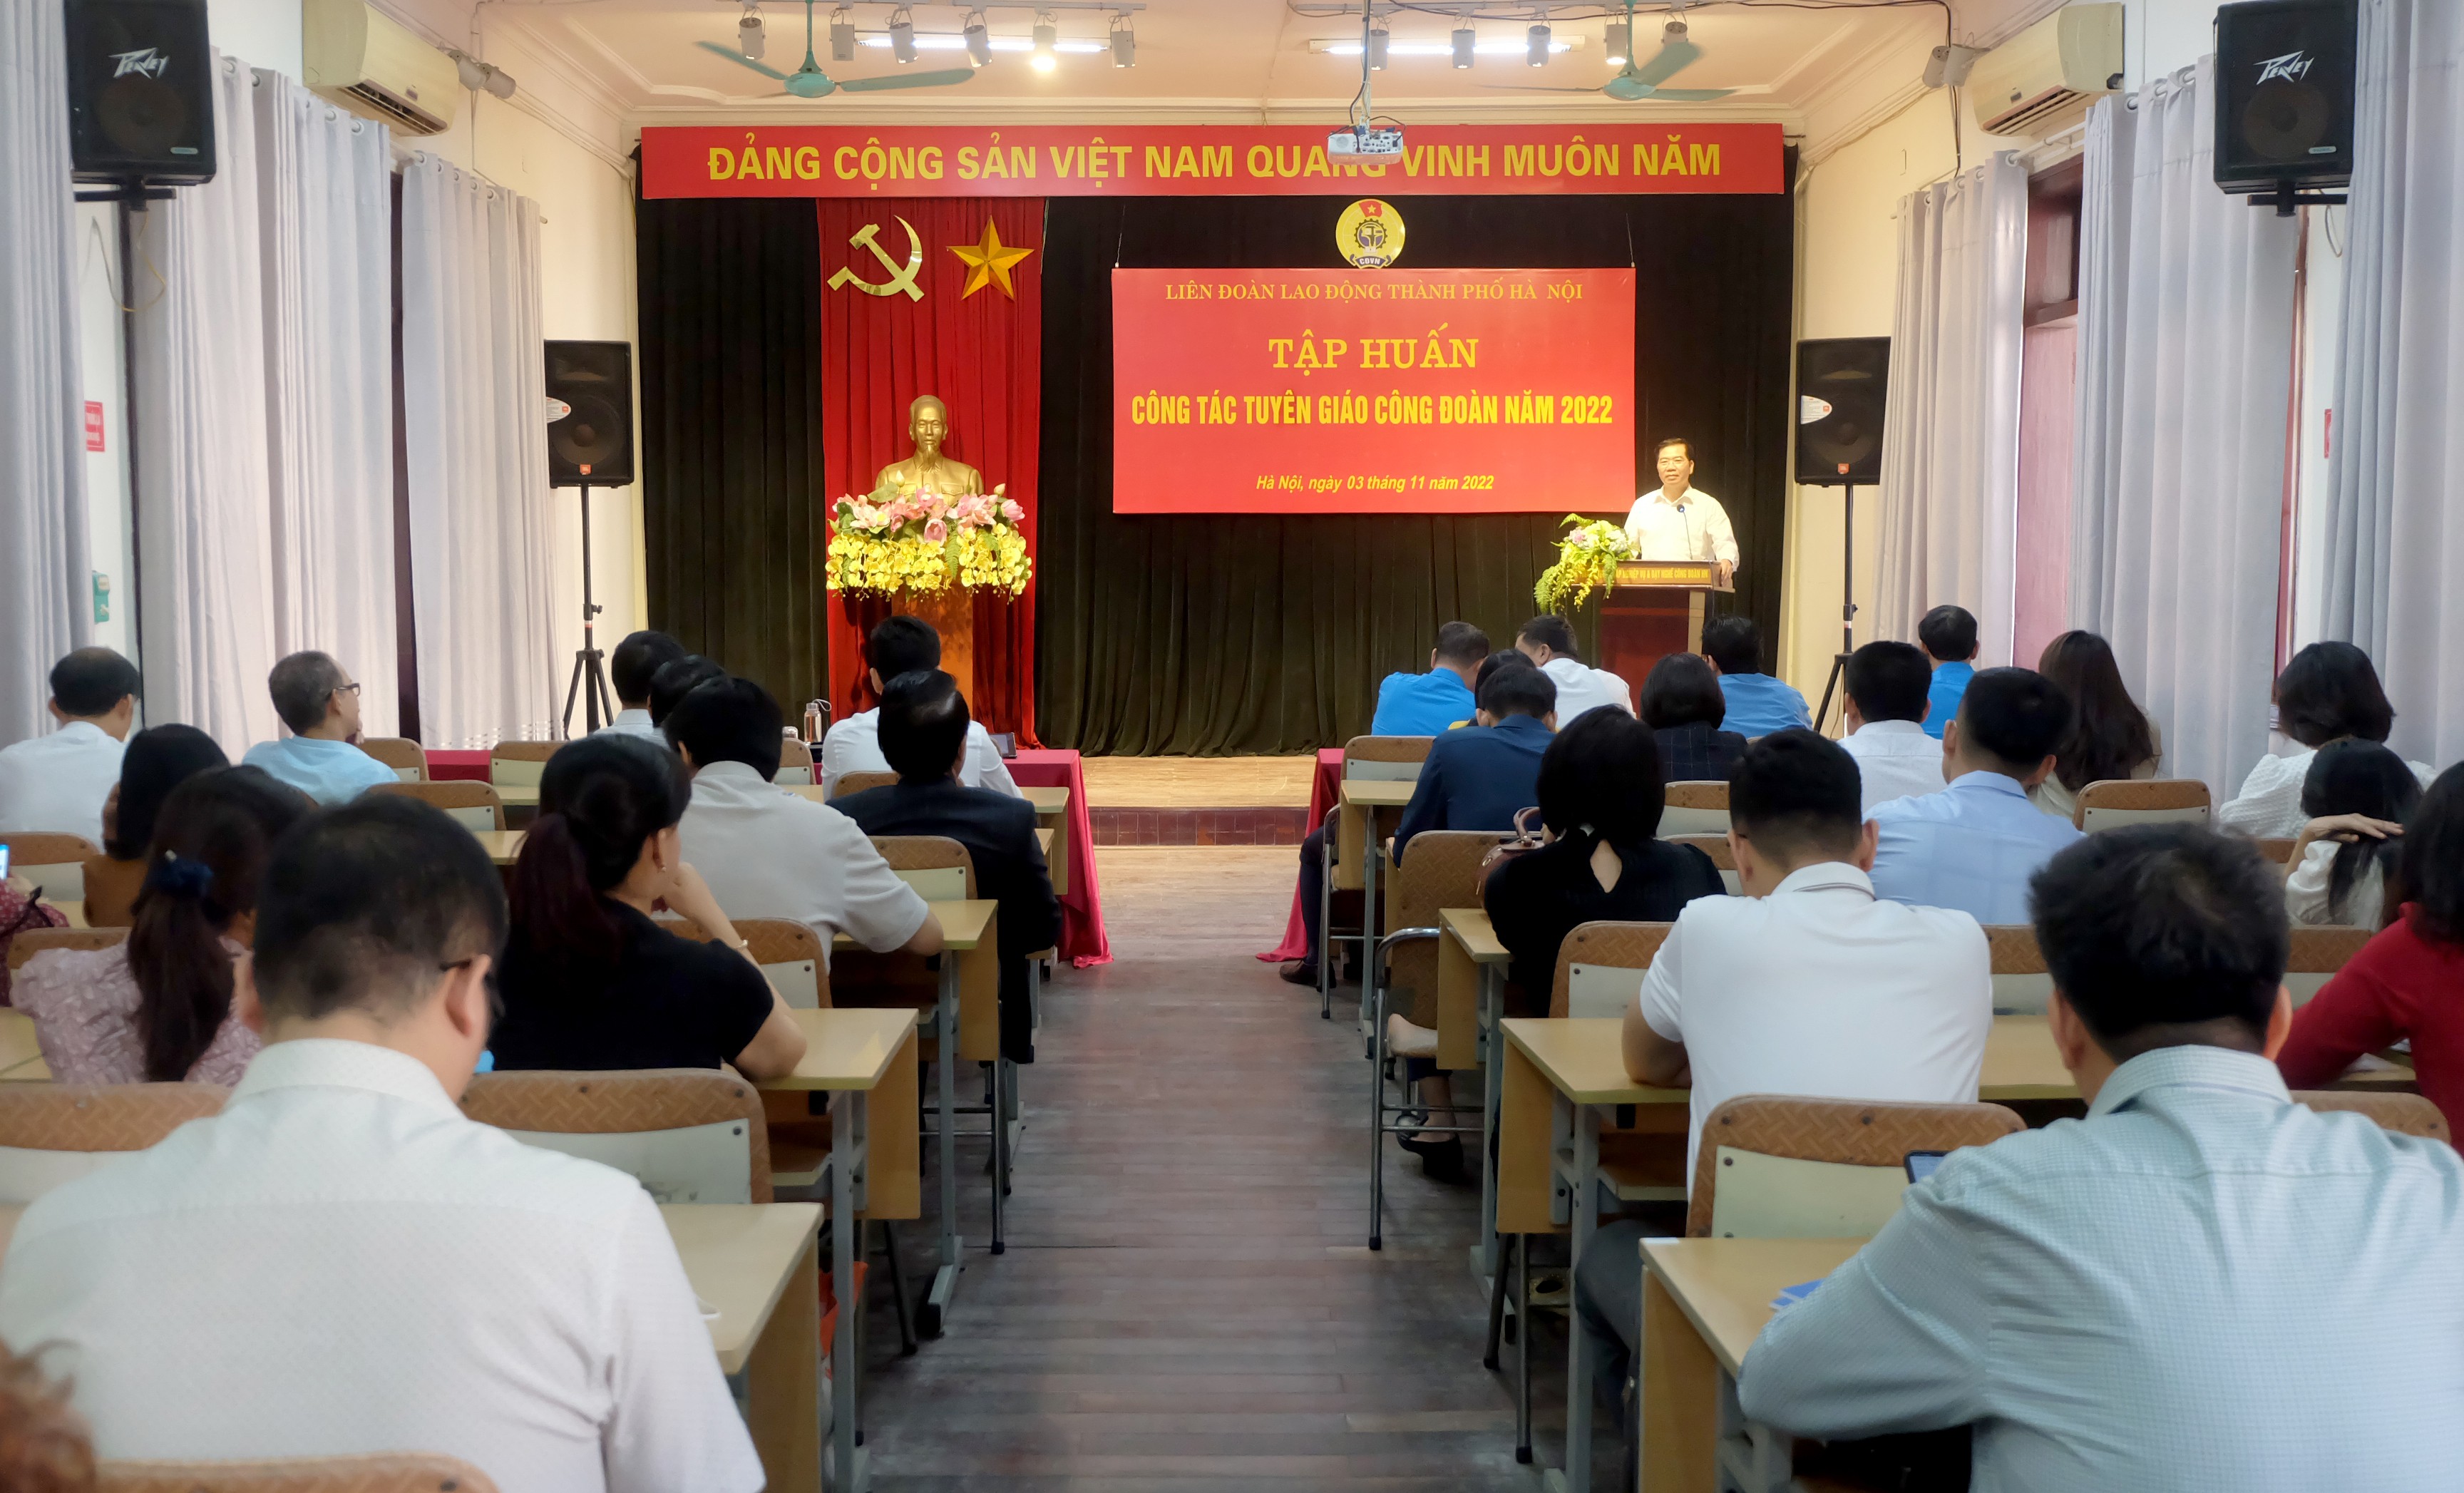 LĐLĐ thành phố Hà Nội tổ chức tập huấn công tác Tuyên giáo Công đoàn năm 2022